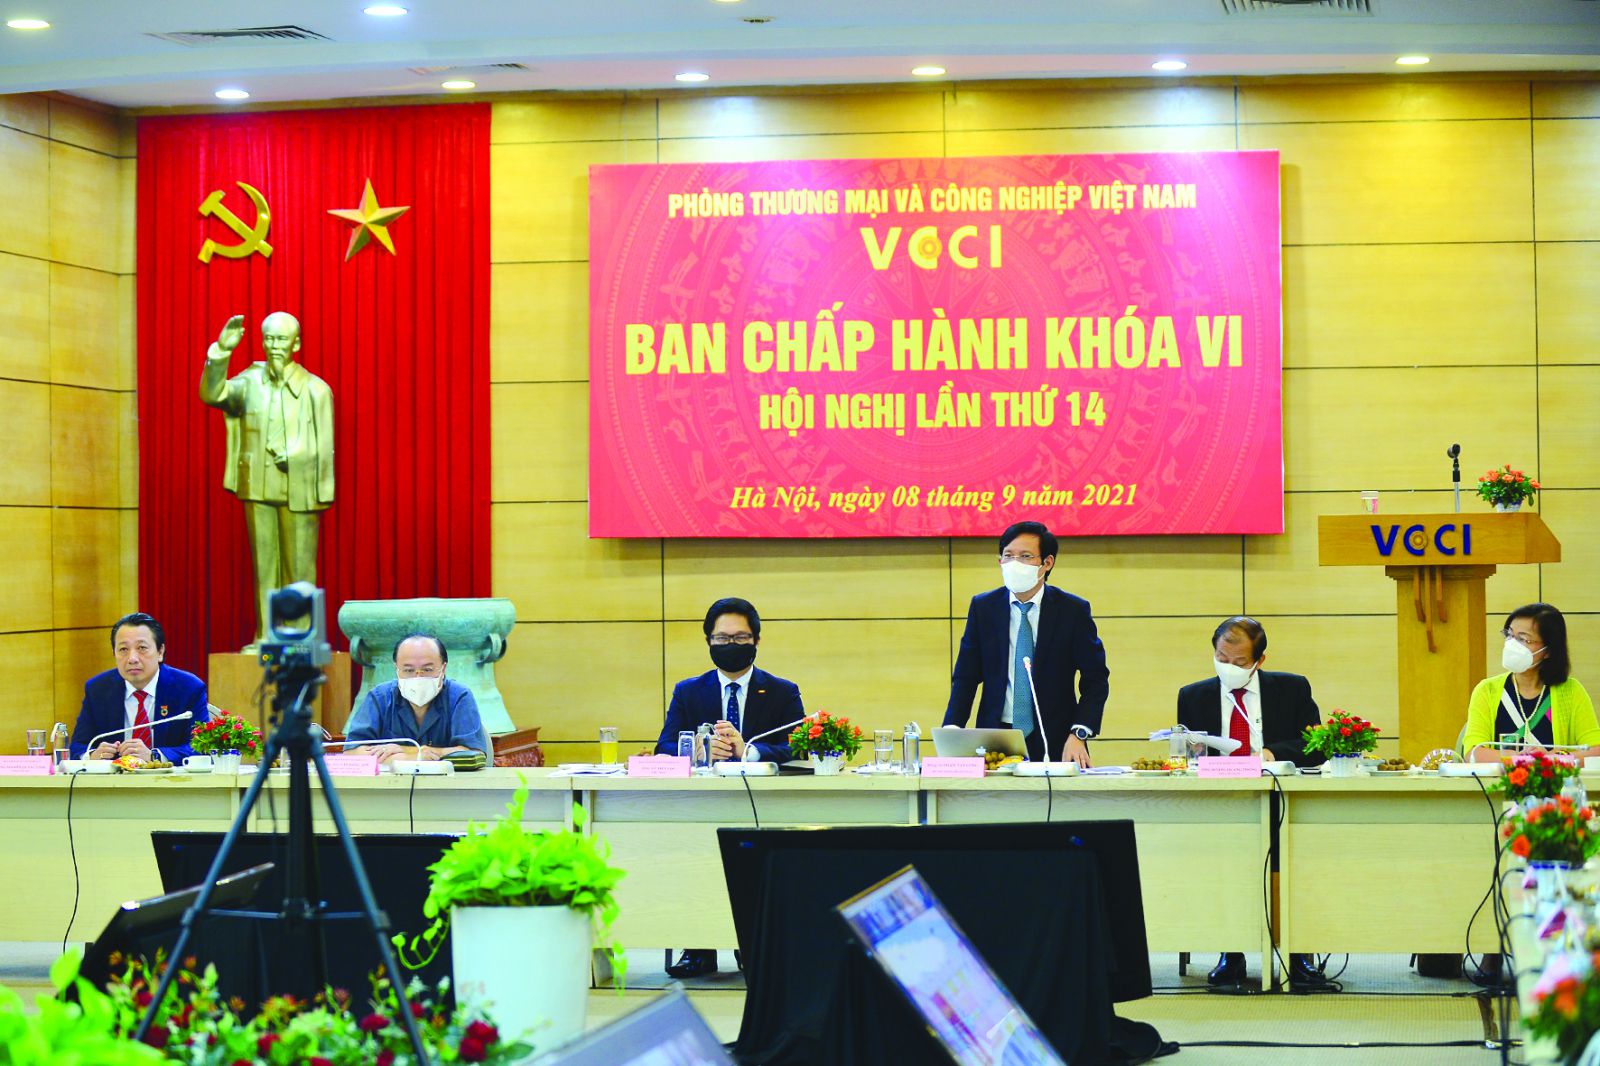 Tân Chủ tịch VCCI Phạm Tấn Công: “Hỗ trợ, đồng hành cùng cộng đồng doanh nghiệp vượt qua Covid-19 lúc này là nhiệm vụ cấp bách mà VCCI cần dốc toàn lực để thực hiện”.